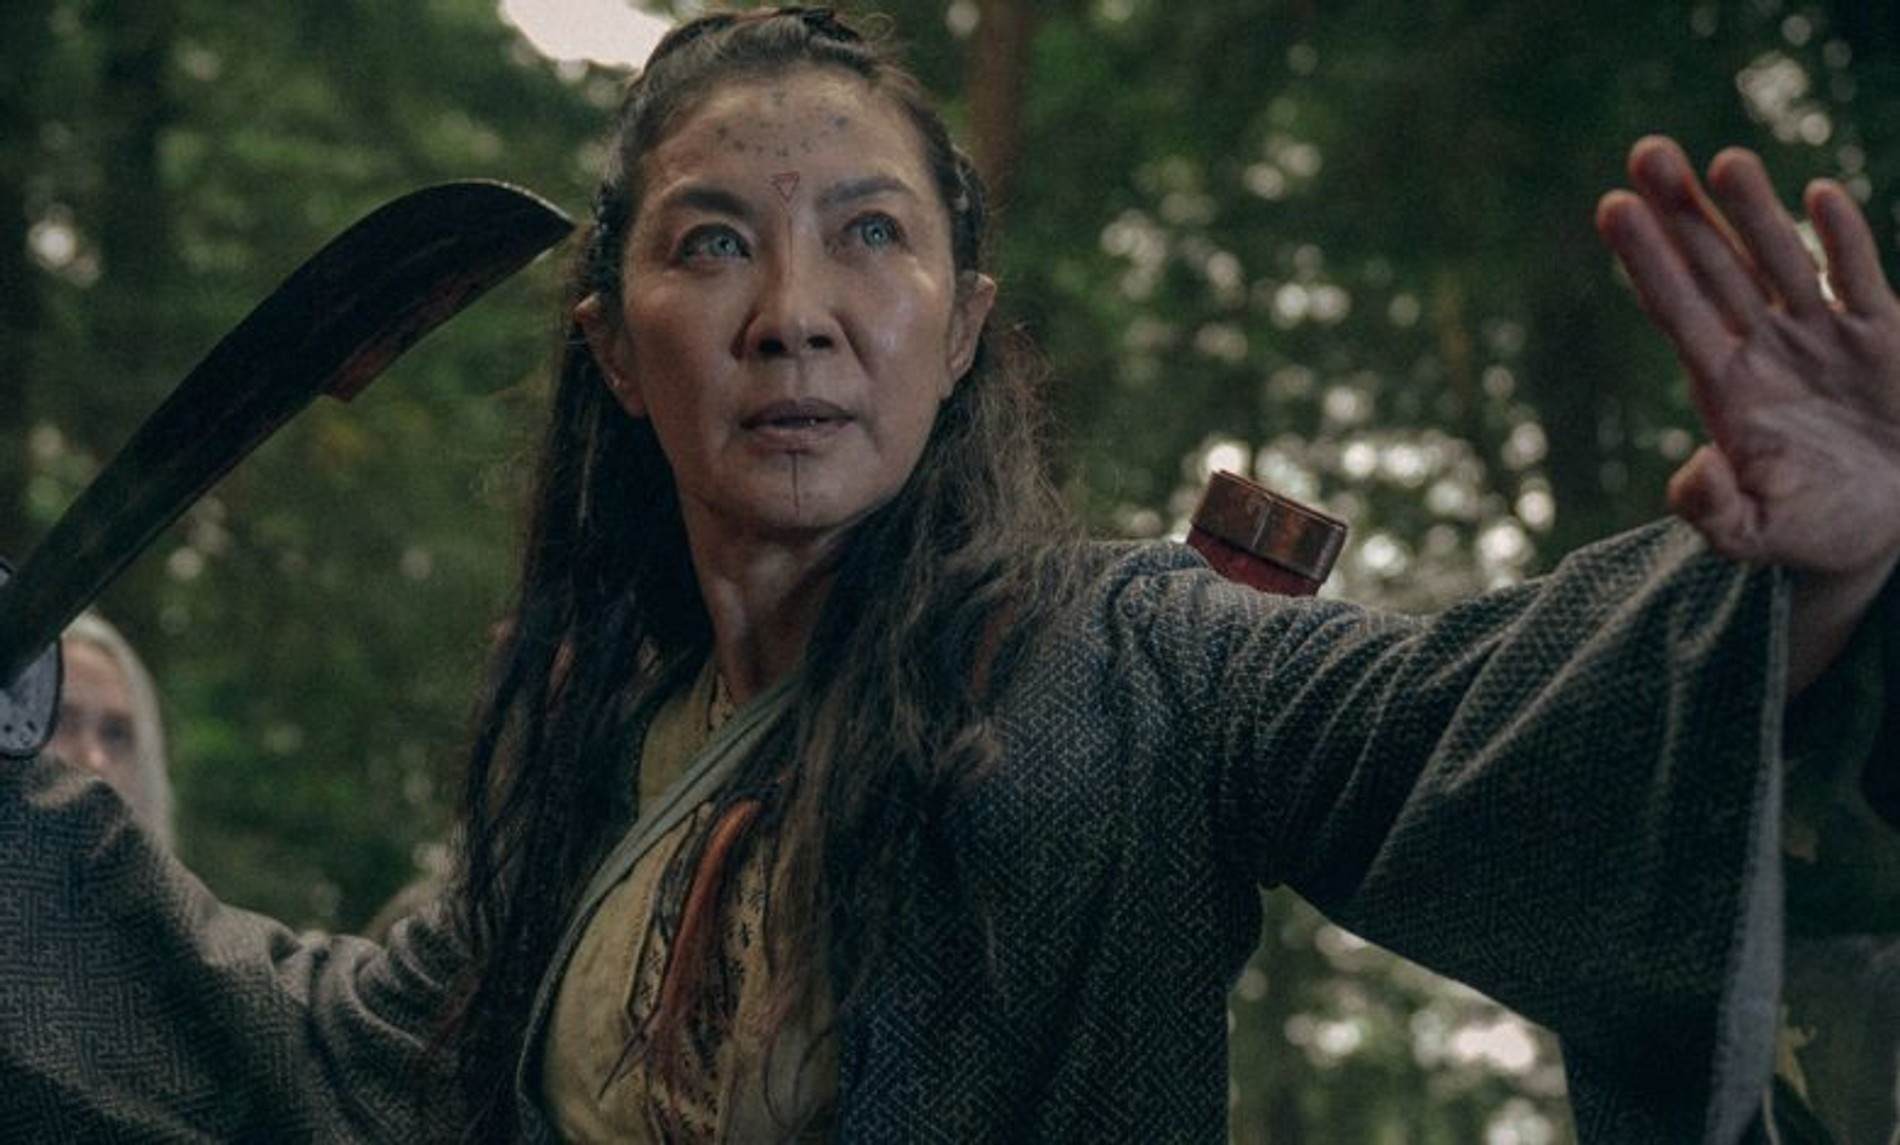 Мишель Йео в сериале «Ведьмак: Происхождение»
Фото: Netflix